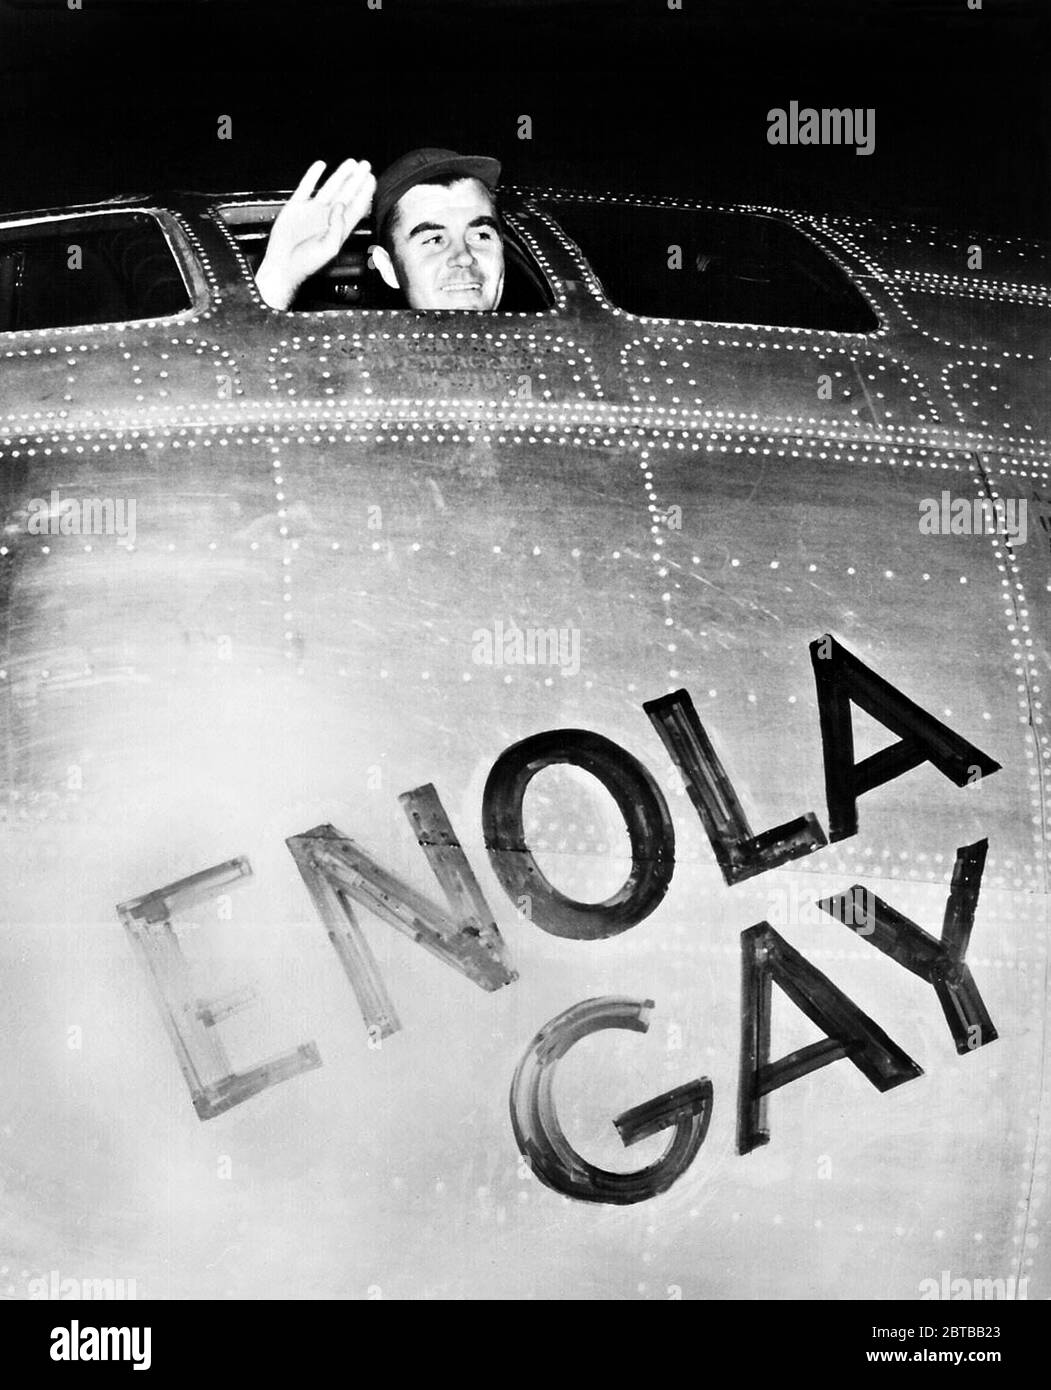 1945 , 6 august , Tinian , Nordische Marianen, Britische Commonwelth : der amerikanische Oberst PAUL Warfield TIBBETS Jr. ( 1915 - 2007 ), Pilot von Boing B-29 ENOLA GAY , das Flugzeug, das die ATOMBOMBE auf HIROSHIMA (Japan) abwarf. In diesem Foto Gruß kurz vor dem Start auf Hiroshima . Foto von offiziellen US Signal Corps . - Attacco ATOMICO NUCLEARE - ATOMANGRIFF - 2. WELTKRIEG - SECONDA GUERRA MONDIALE - foto storiche storica - GESCHICHTE FOTOS - Stati Uniti d'America - Bombardemamento - aviazione - BOMBA ATOMICA - Bomb - attacco aereo - USA - GIAPPONE - GUERRA DEL PACIFICO - Stockfoto